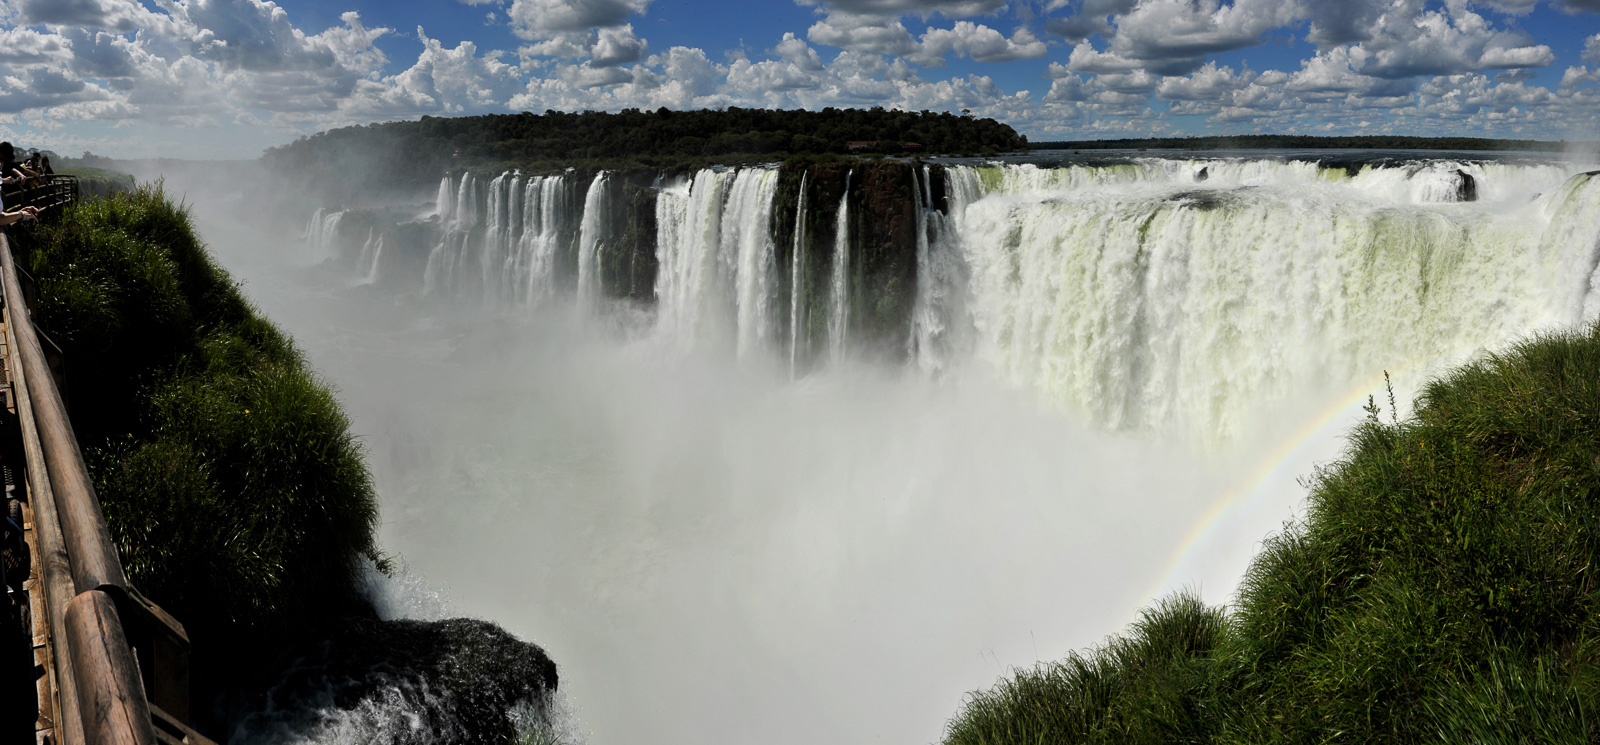 Cataratas del Iguazu [28 mm, 1/320 Sek. bei f / 22, ISO 200]